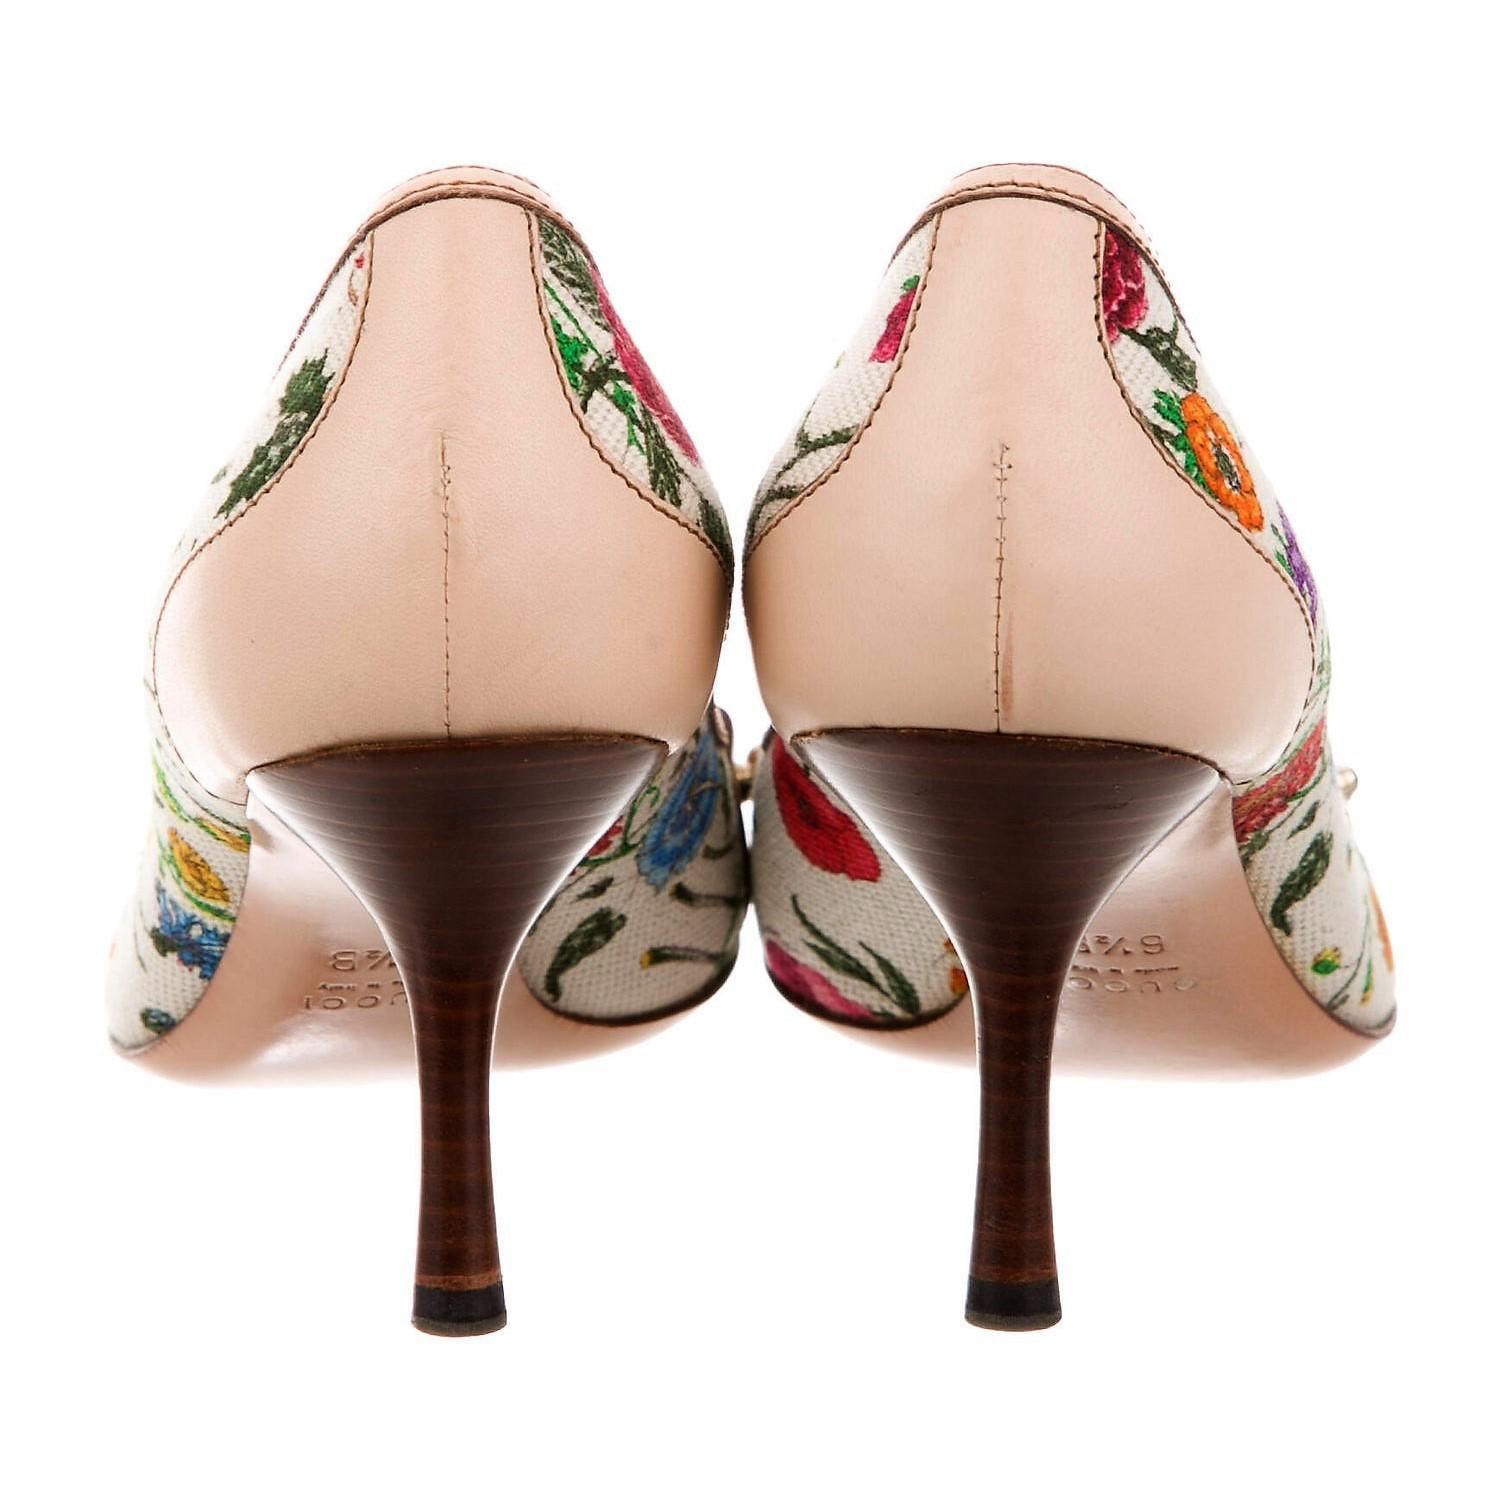 gucci flora shoes